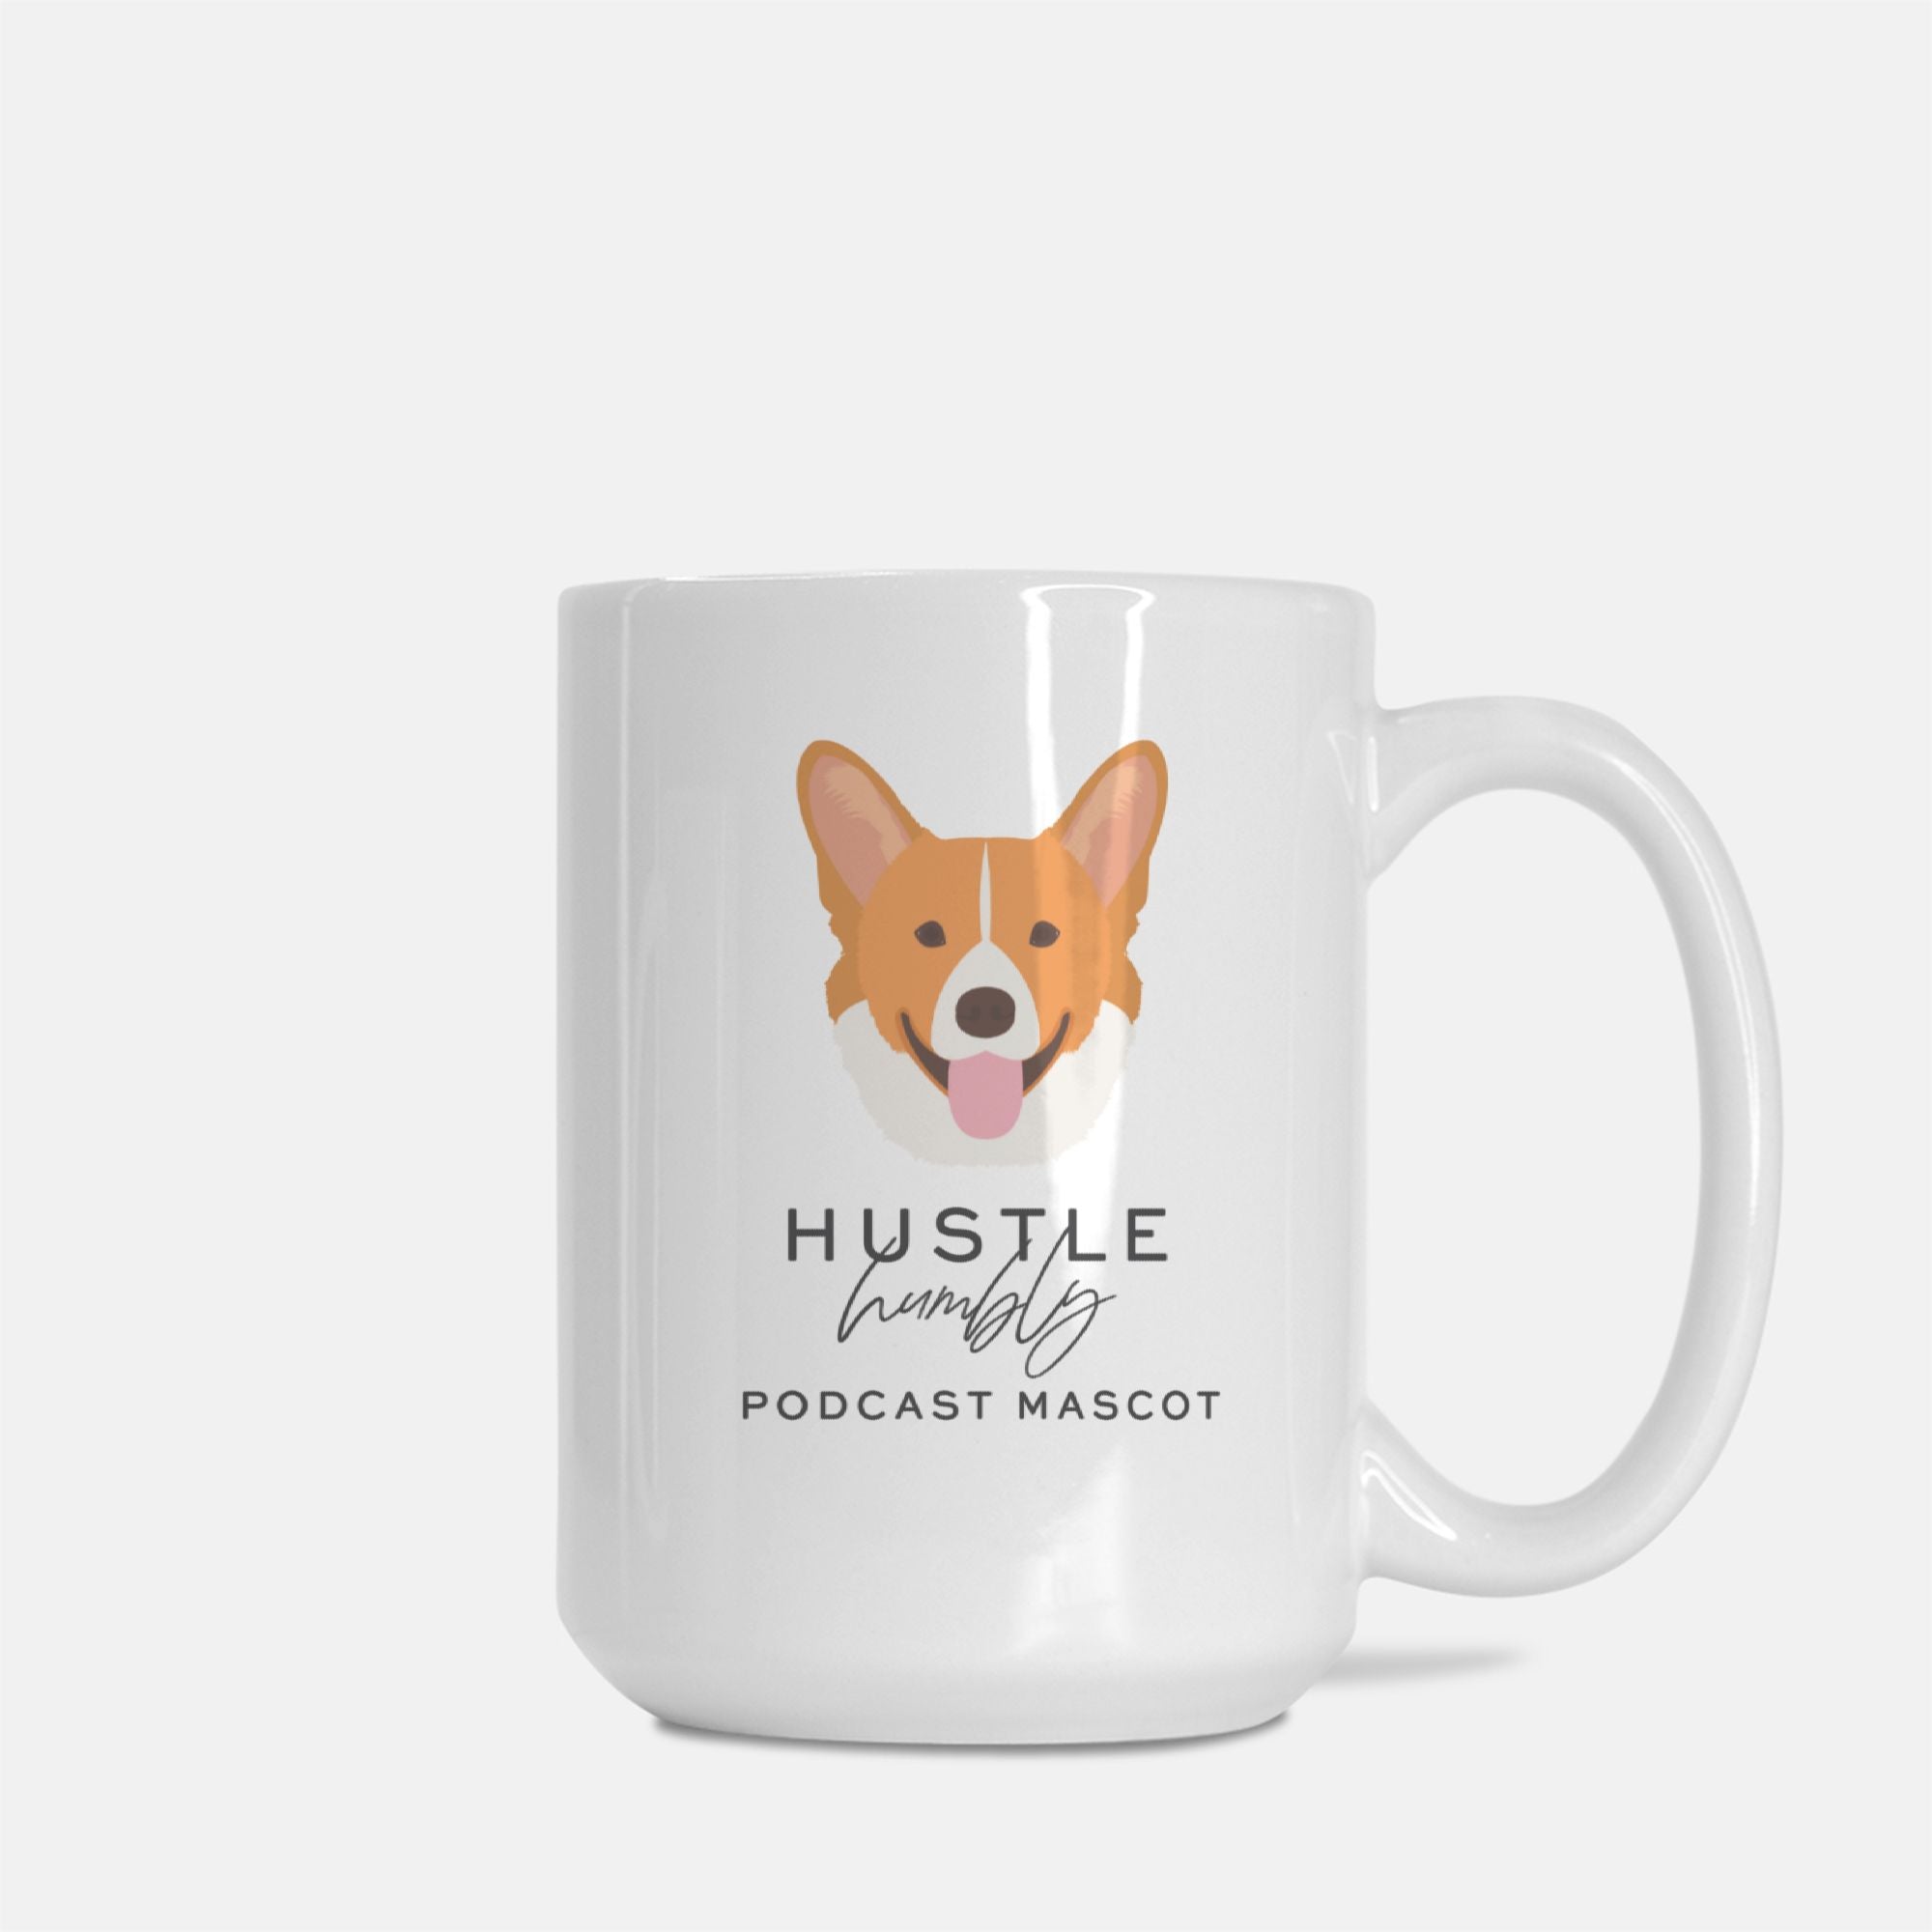 Murphy Podcast Mascot Mug